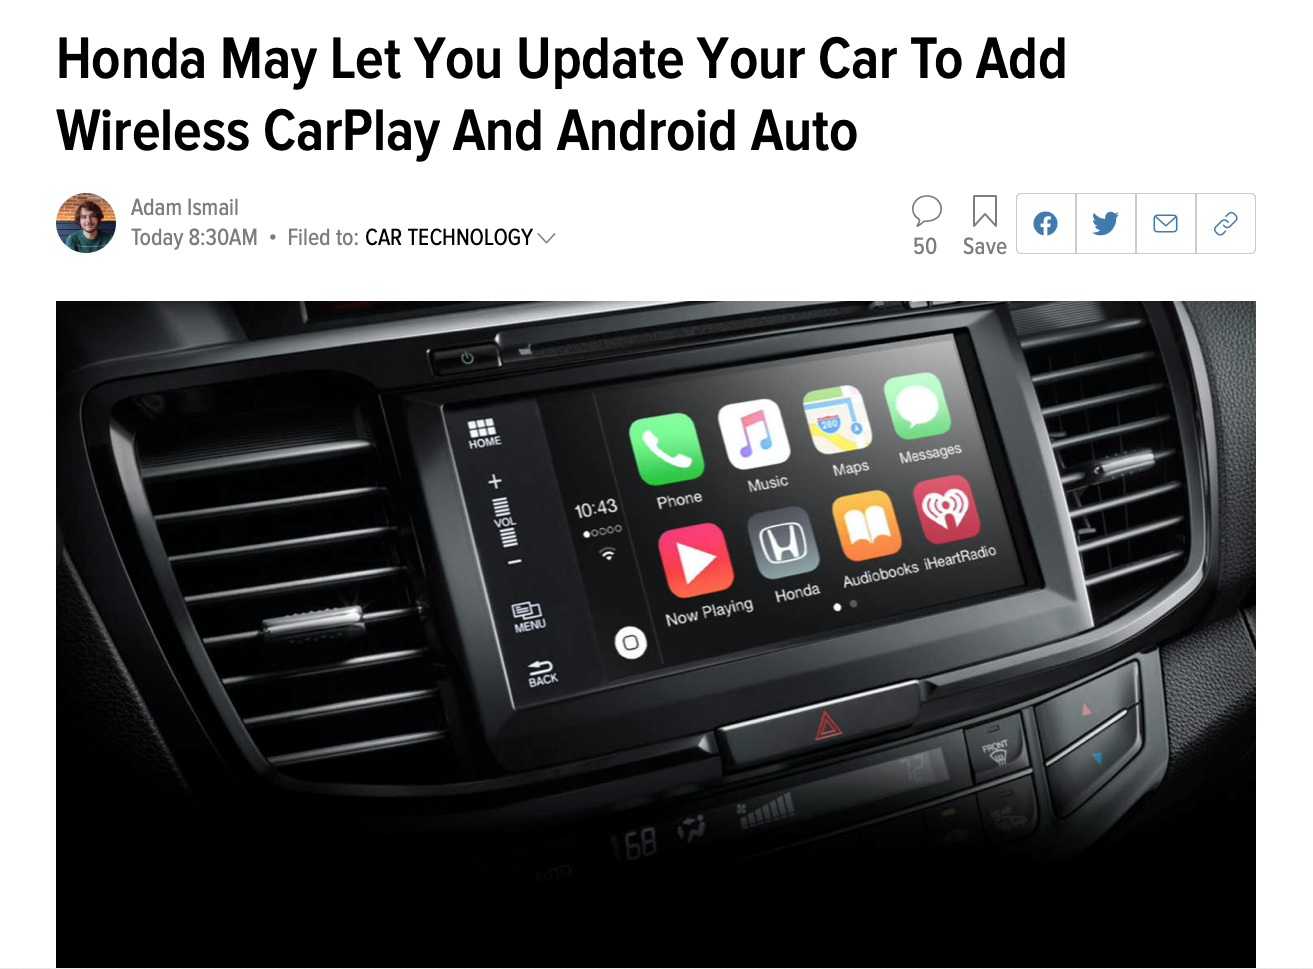 Honda có thể sẽ phát hành bản cập nhật cho phép Apple CarPlay kết nối wireless với các xe đời cũ